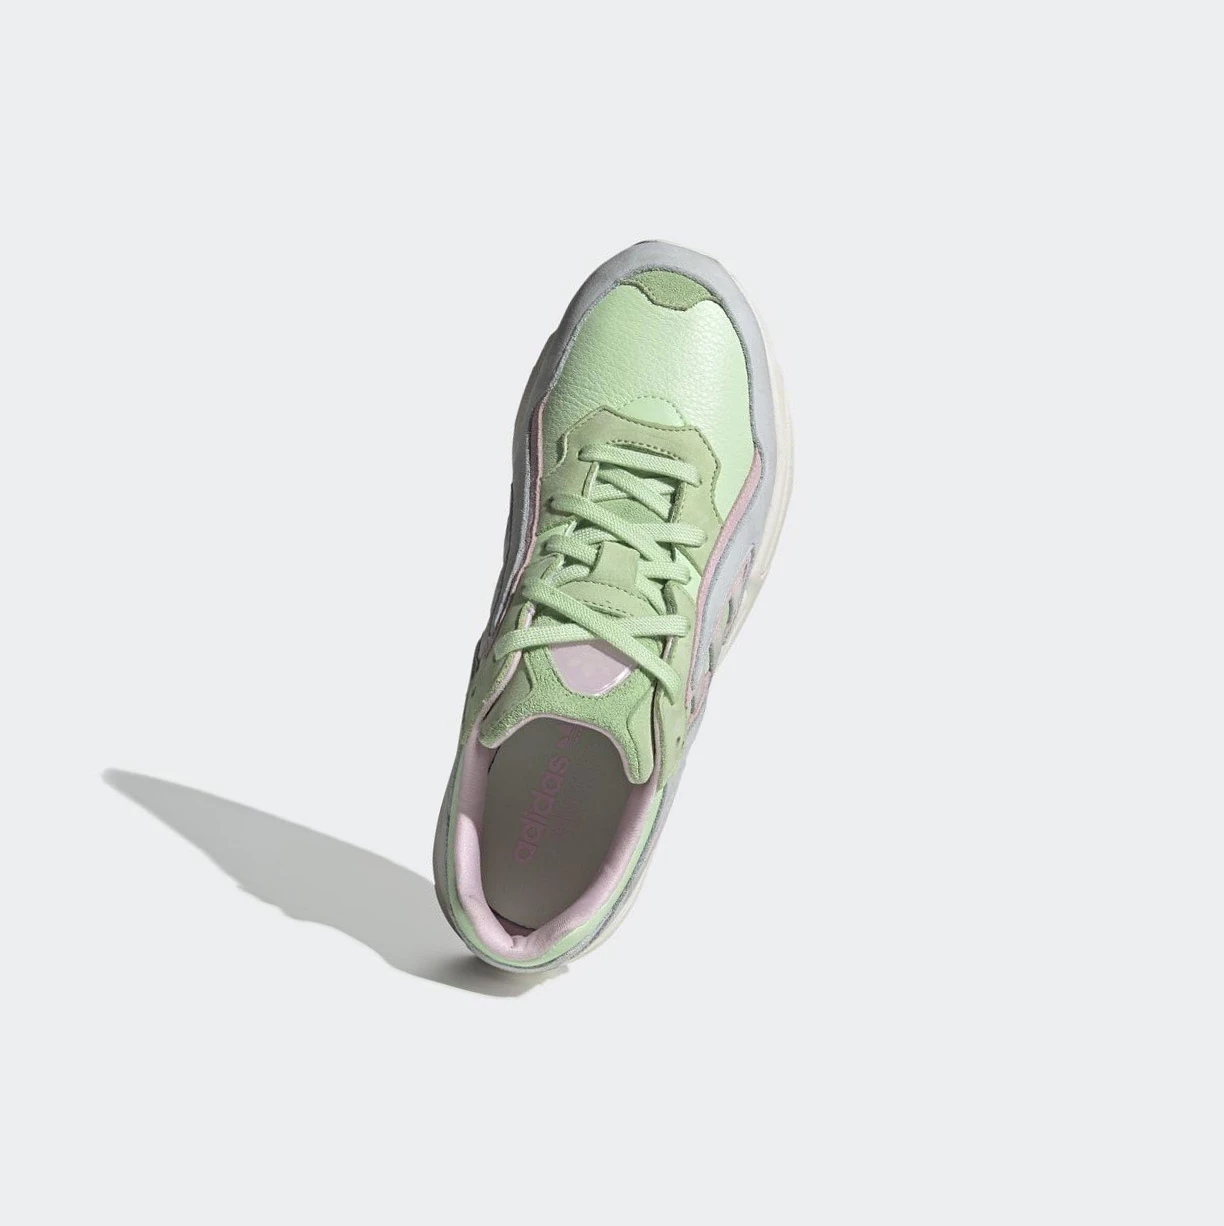 Originálne Topánky Adidas Yung-96 Chasm Panske Zelene | 937SKNEAHRX